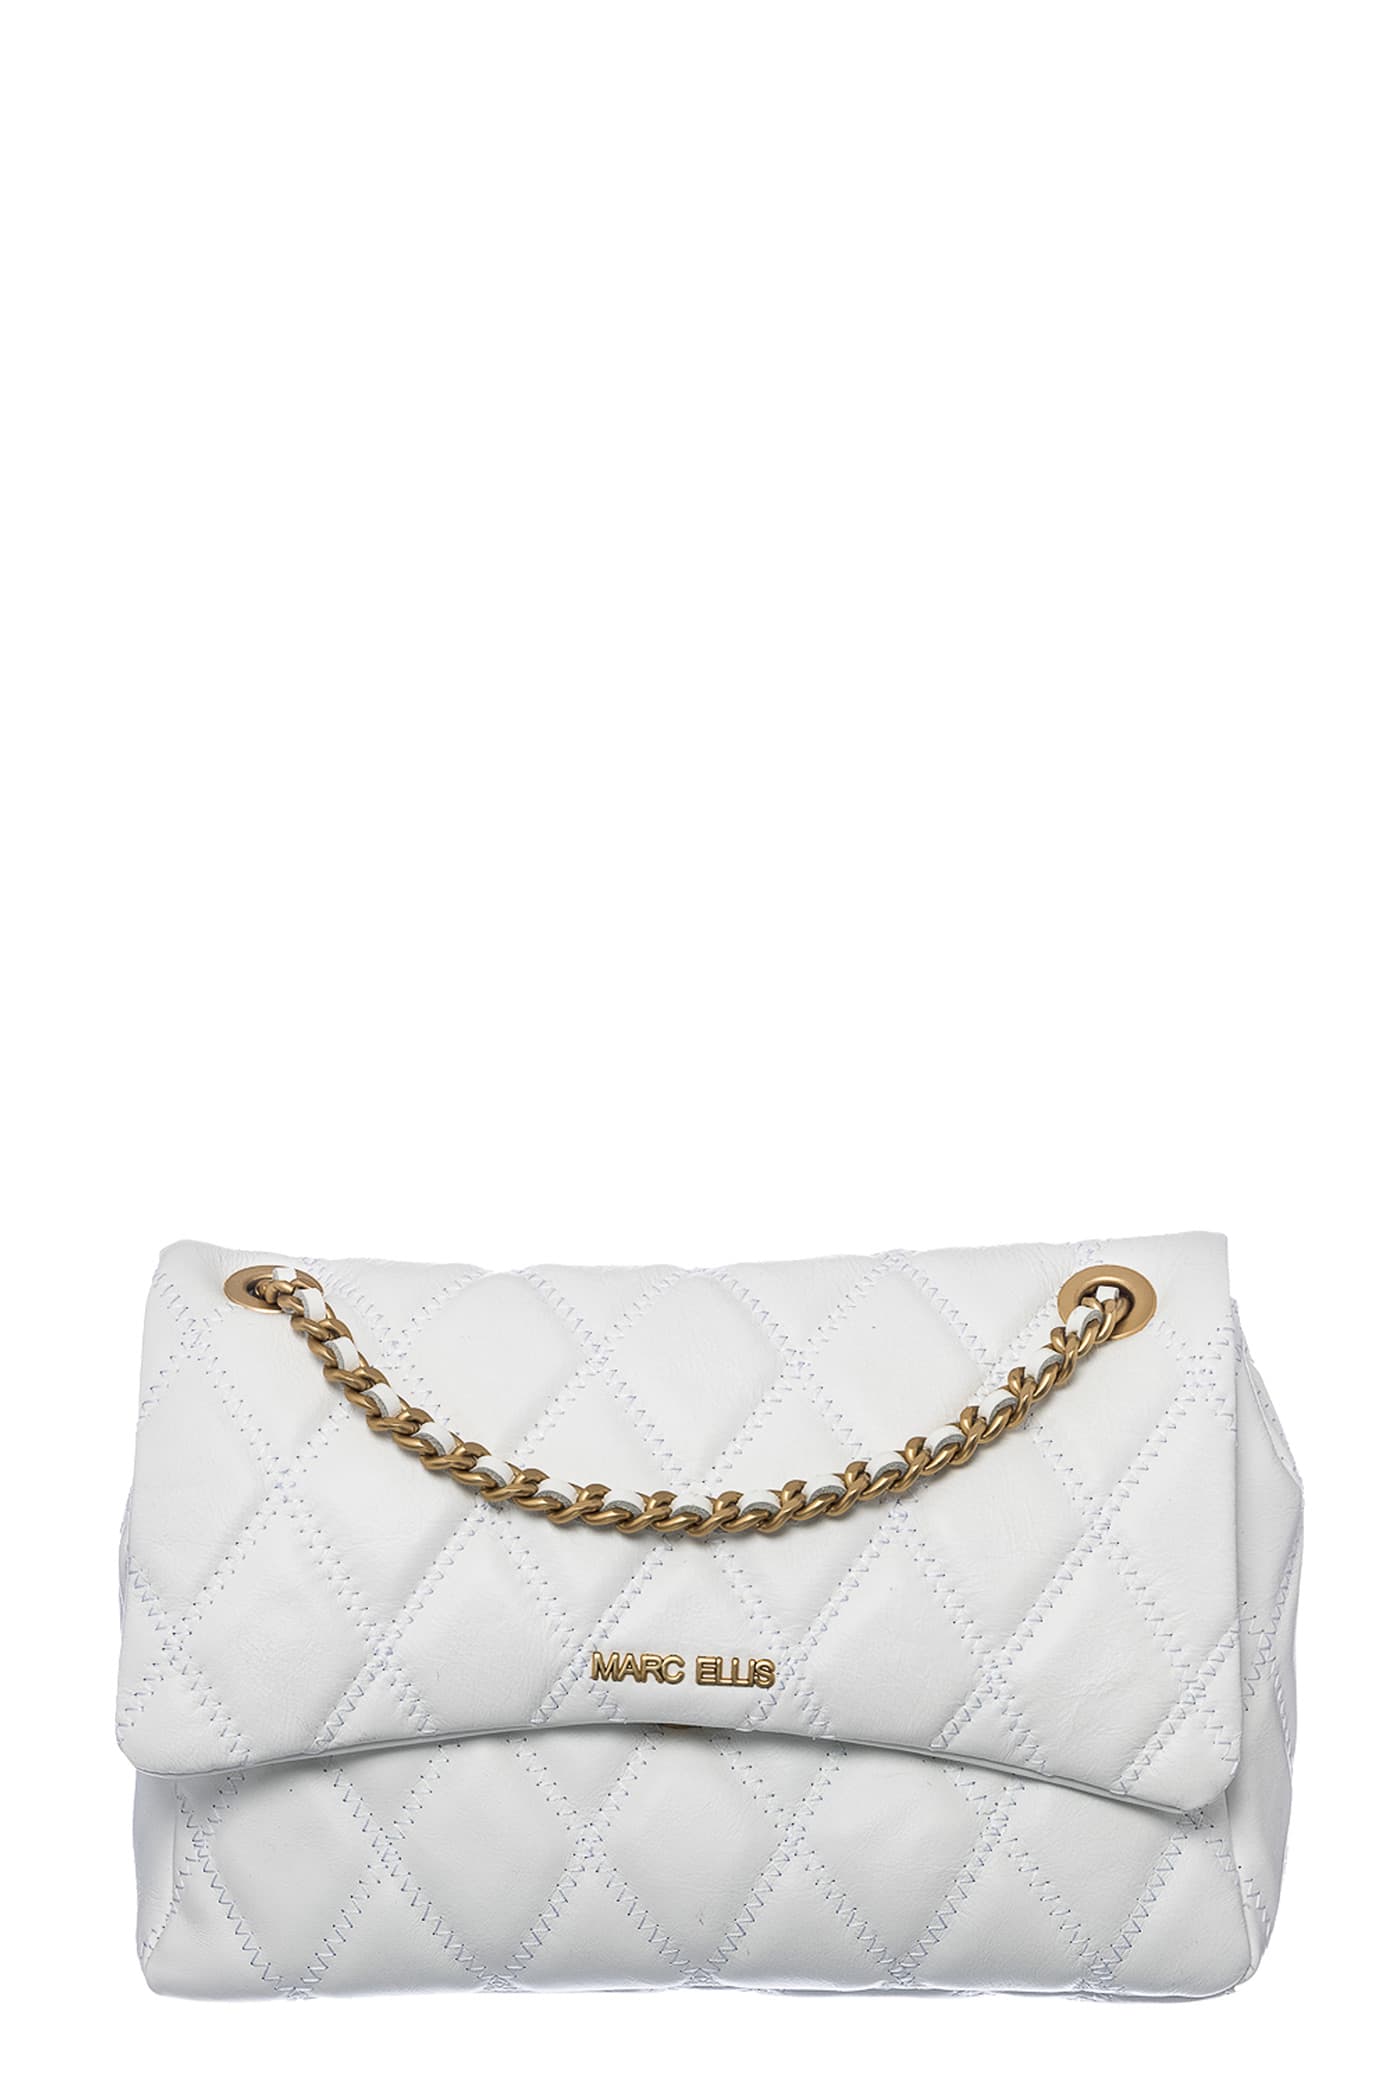 Marc Ellis Desdemona L Shoulder Bag In White Leather